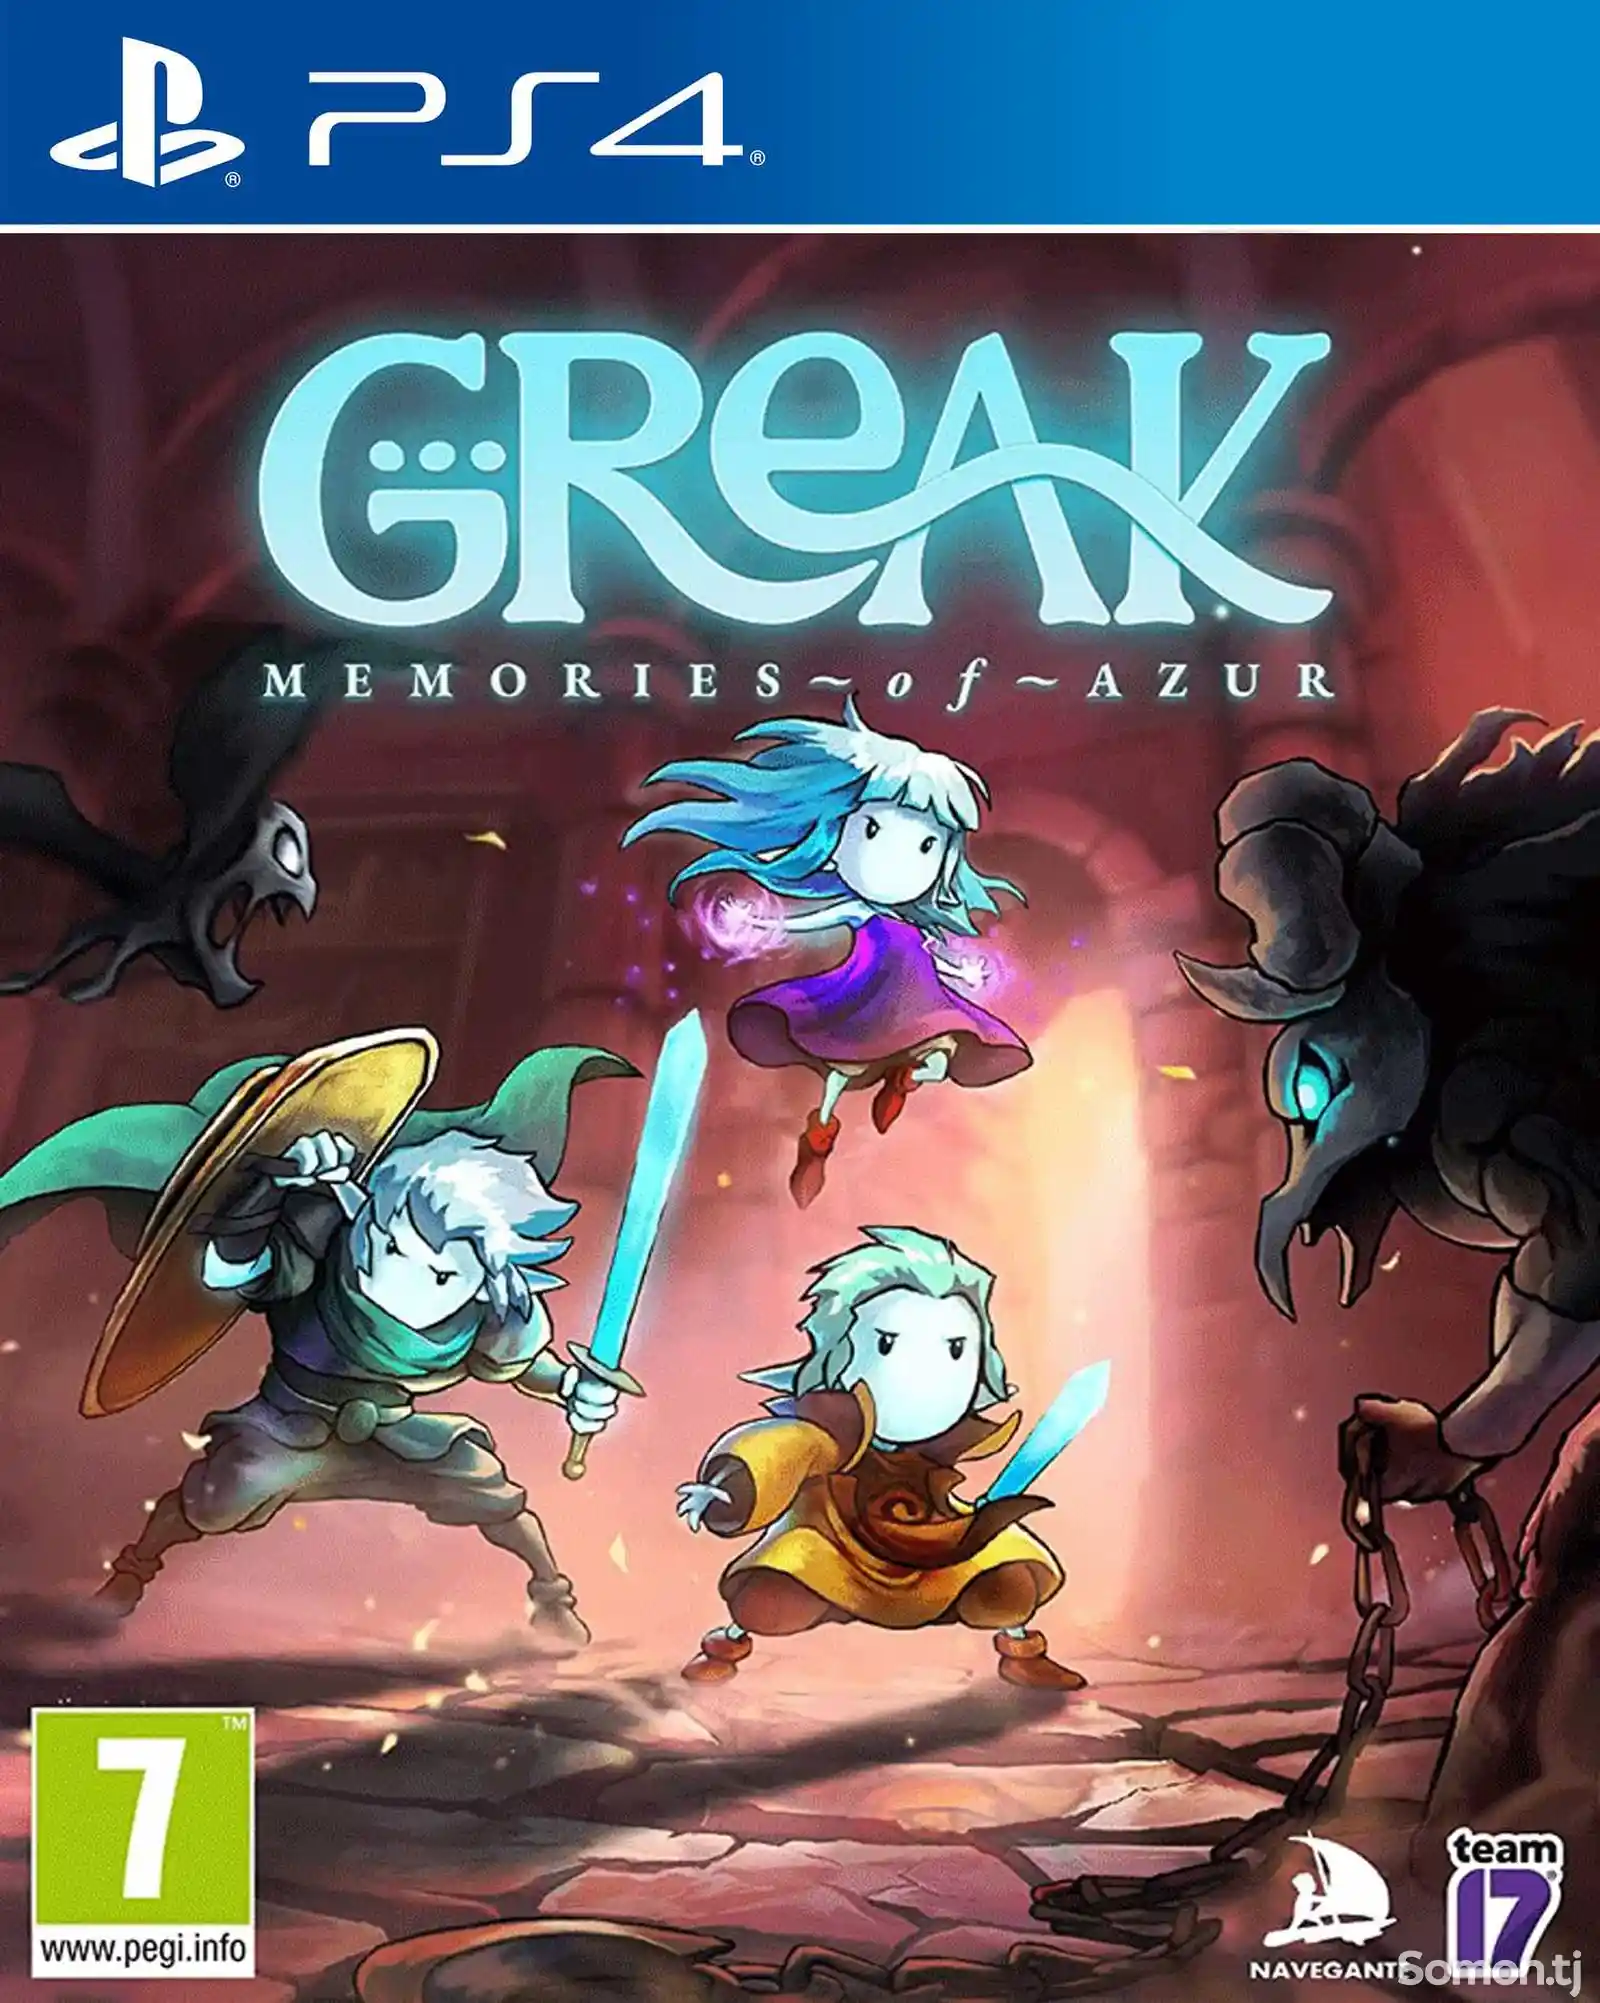 Игра Greak memories of azur для PS-4 / 5.05 / 6.72 / 7.02 / 7.55 / 9.00 /-1